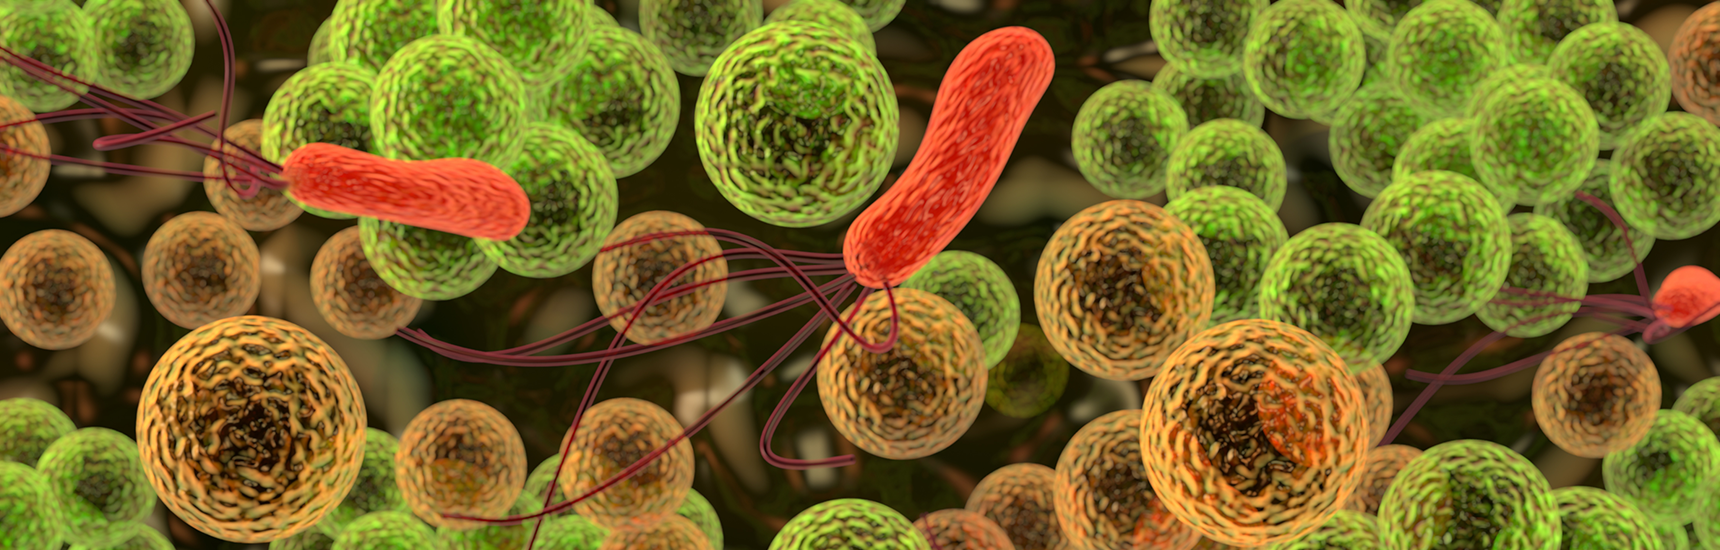 Mikrobiom & Infektiologie